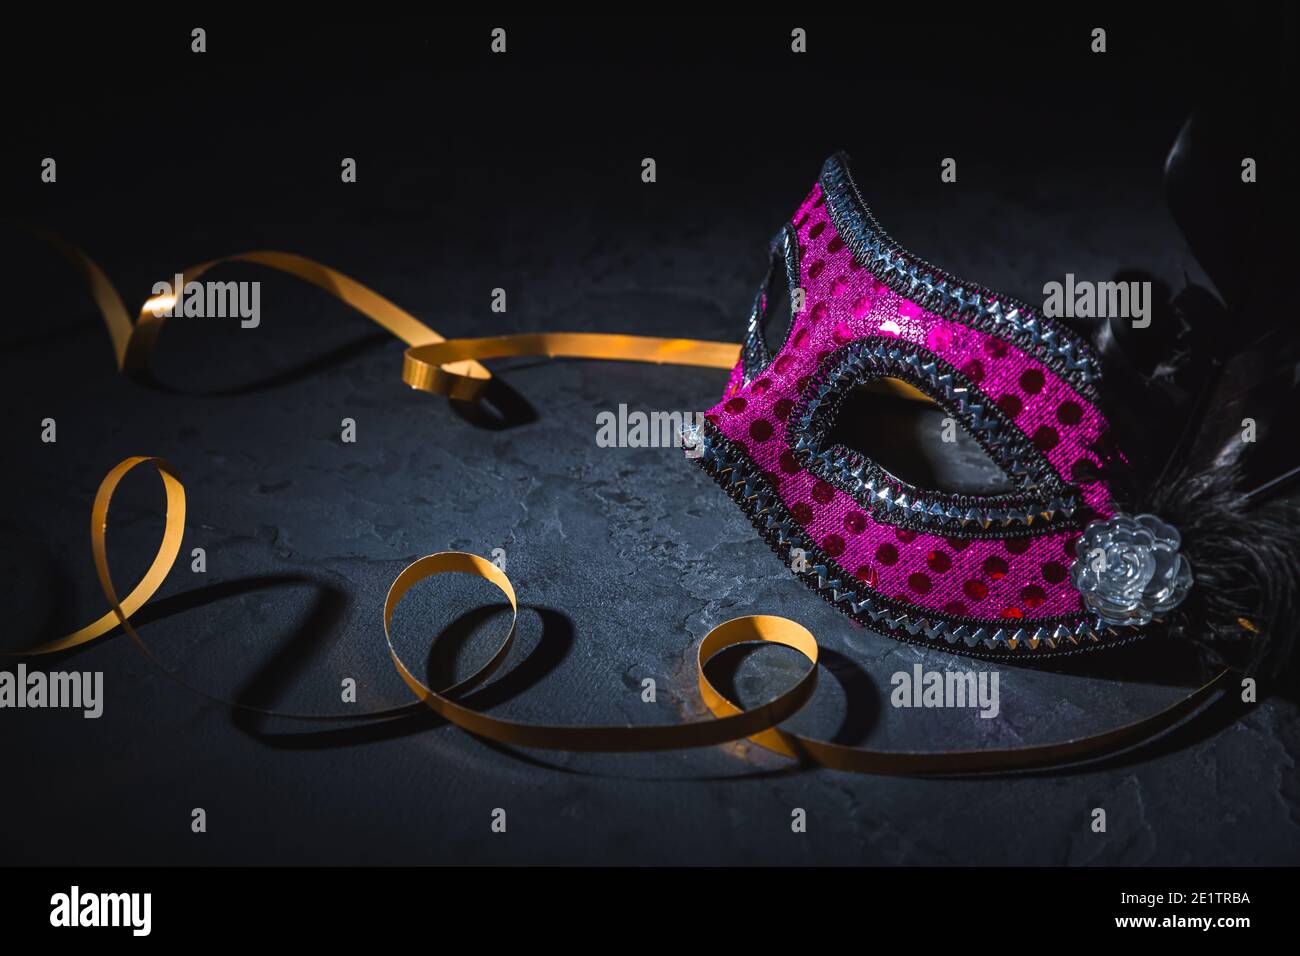 Masque de carnaval avec ruban doré sur fond noir Banque D'Images